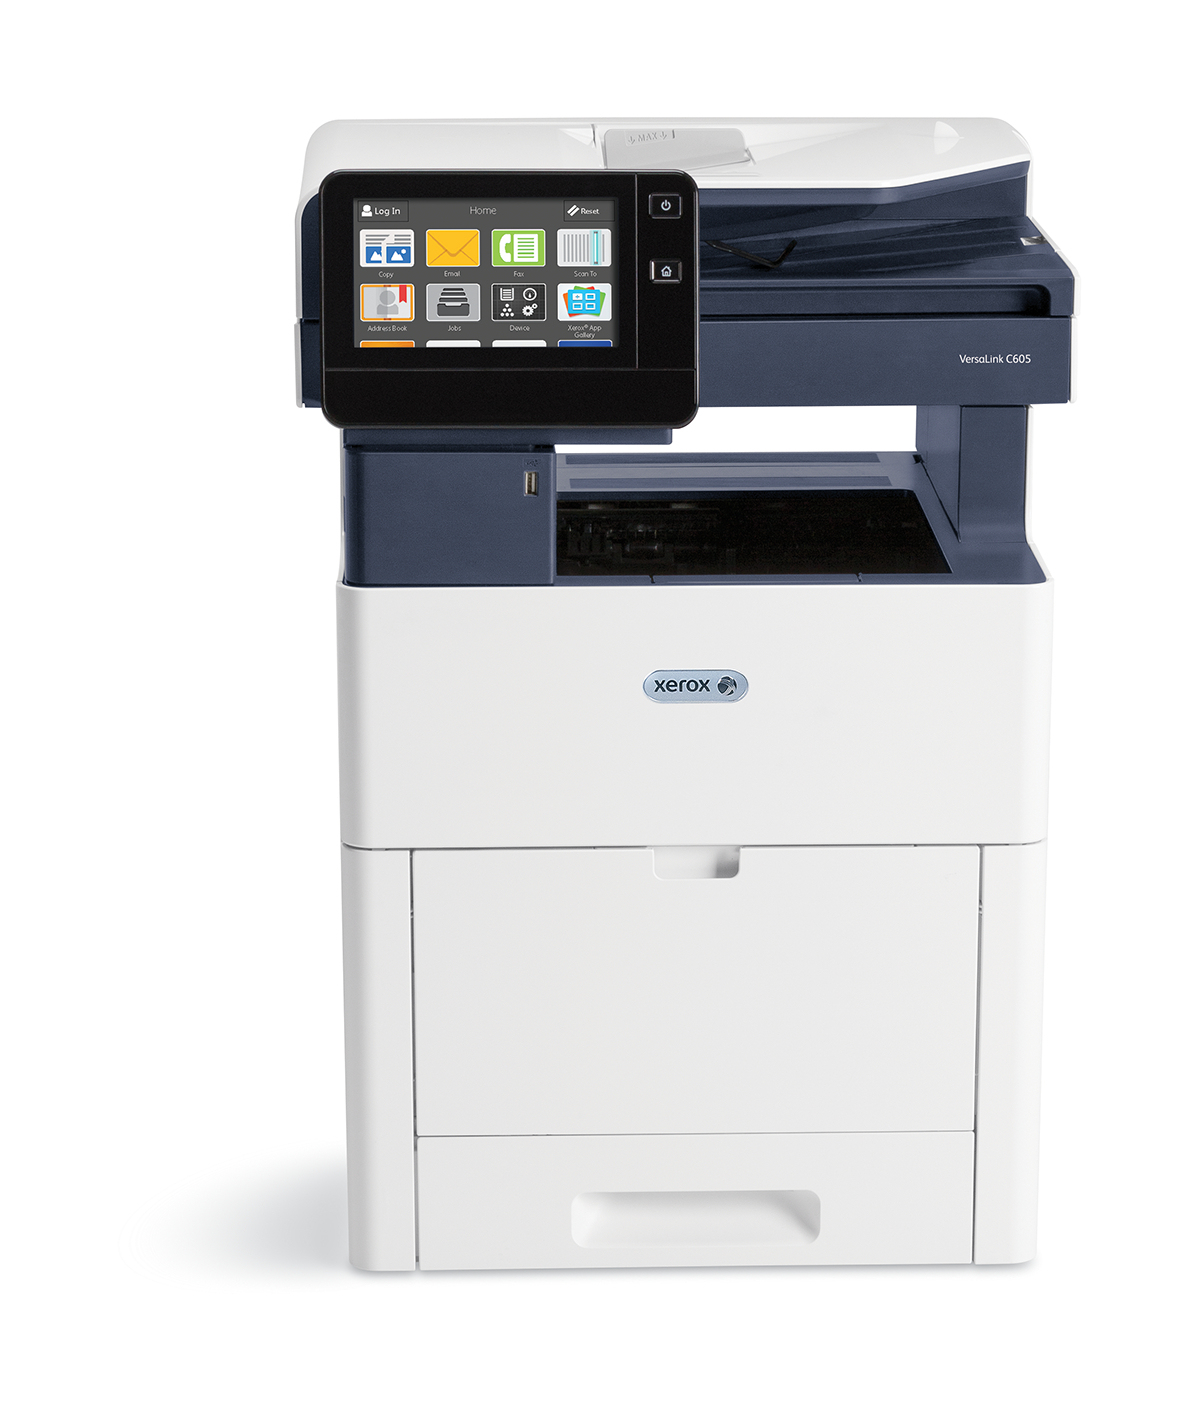 Xerox VersaLink C605 A4 55 sid/min dubbels kop/utskr/scan/fax såld PS3 PCL5e/6 2 magasin 700 ark (SAKNAR STÖD FÖR EFTERBEHANDLINGSENHET)